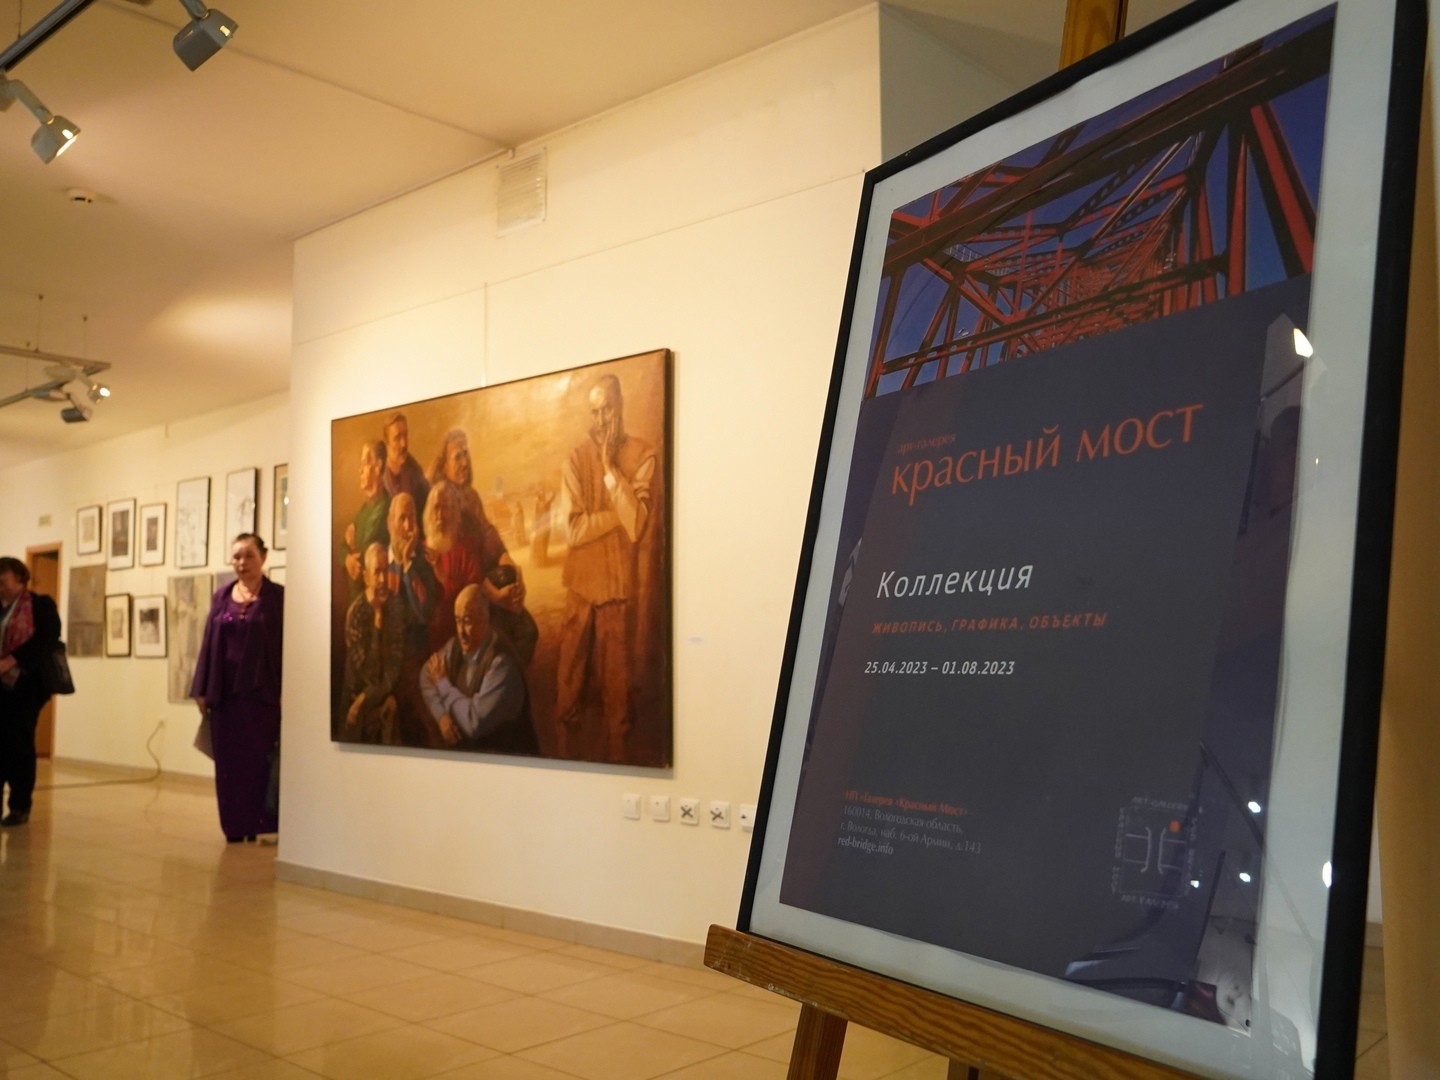 Первым муниципальным музеем стала галерея современного искусства «Красный мост».